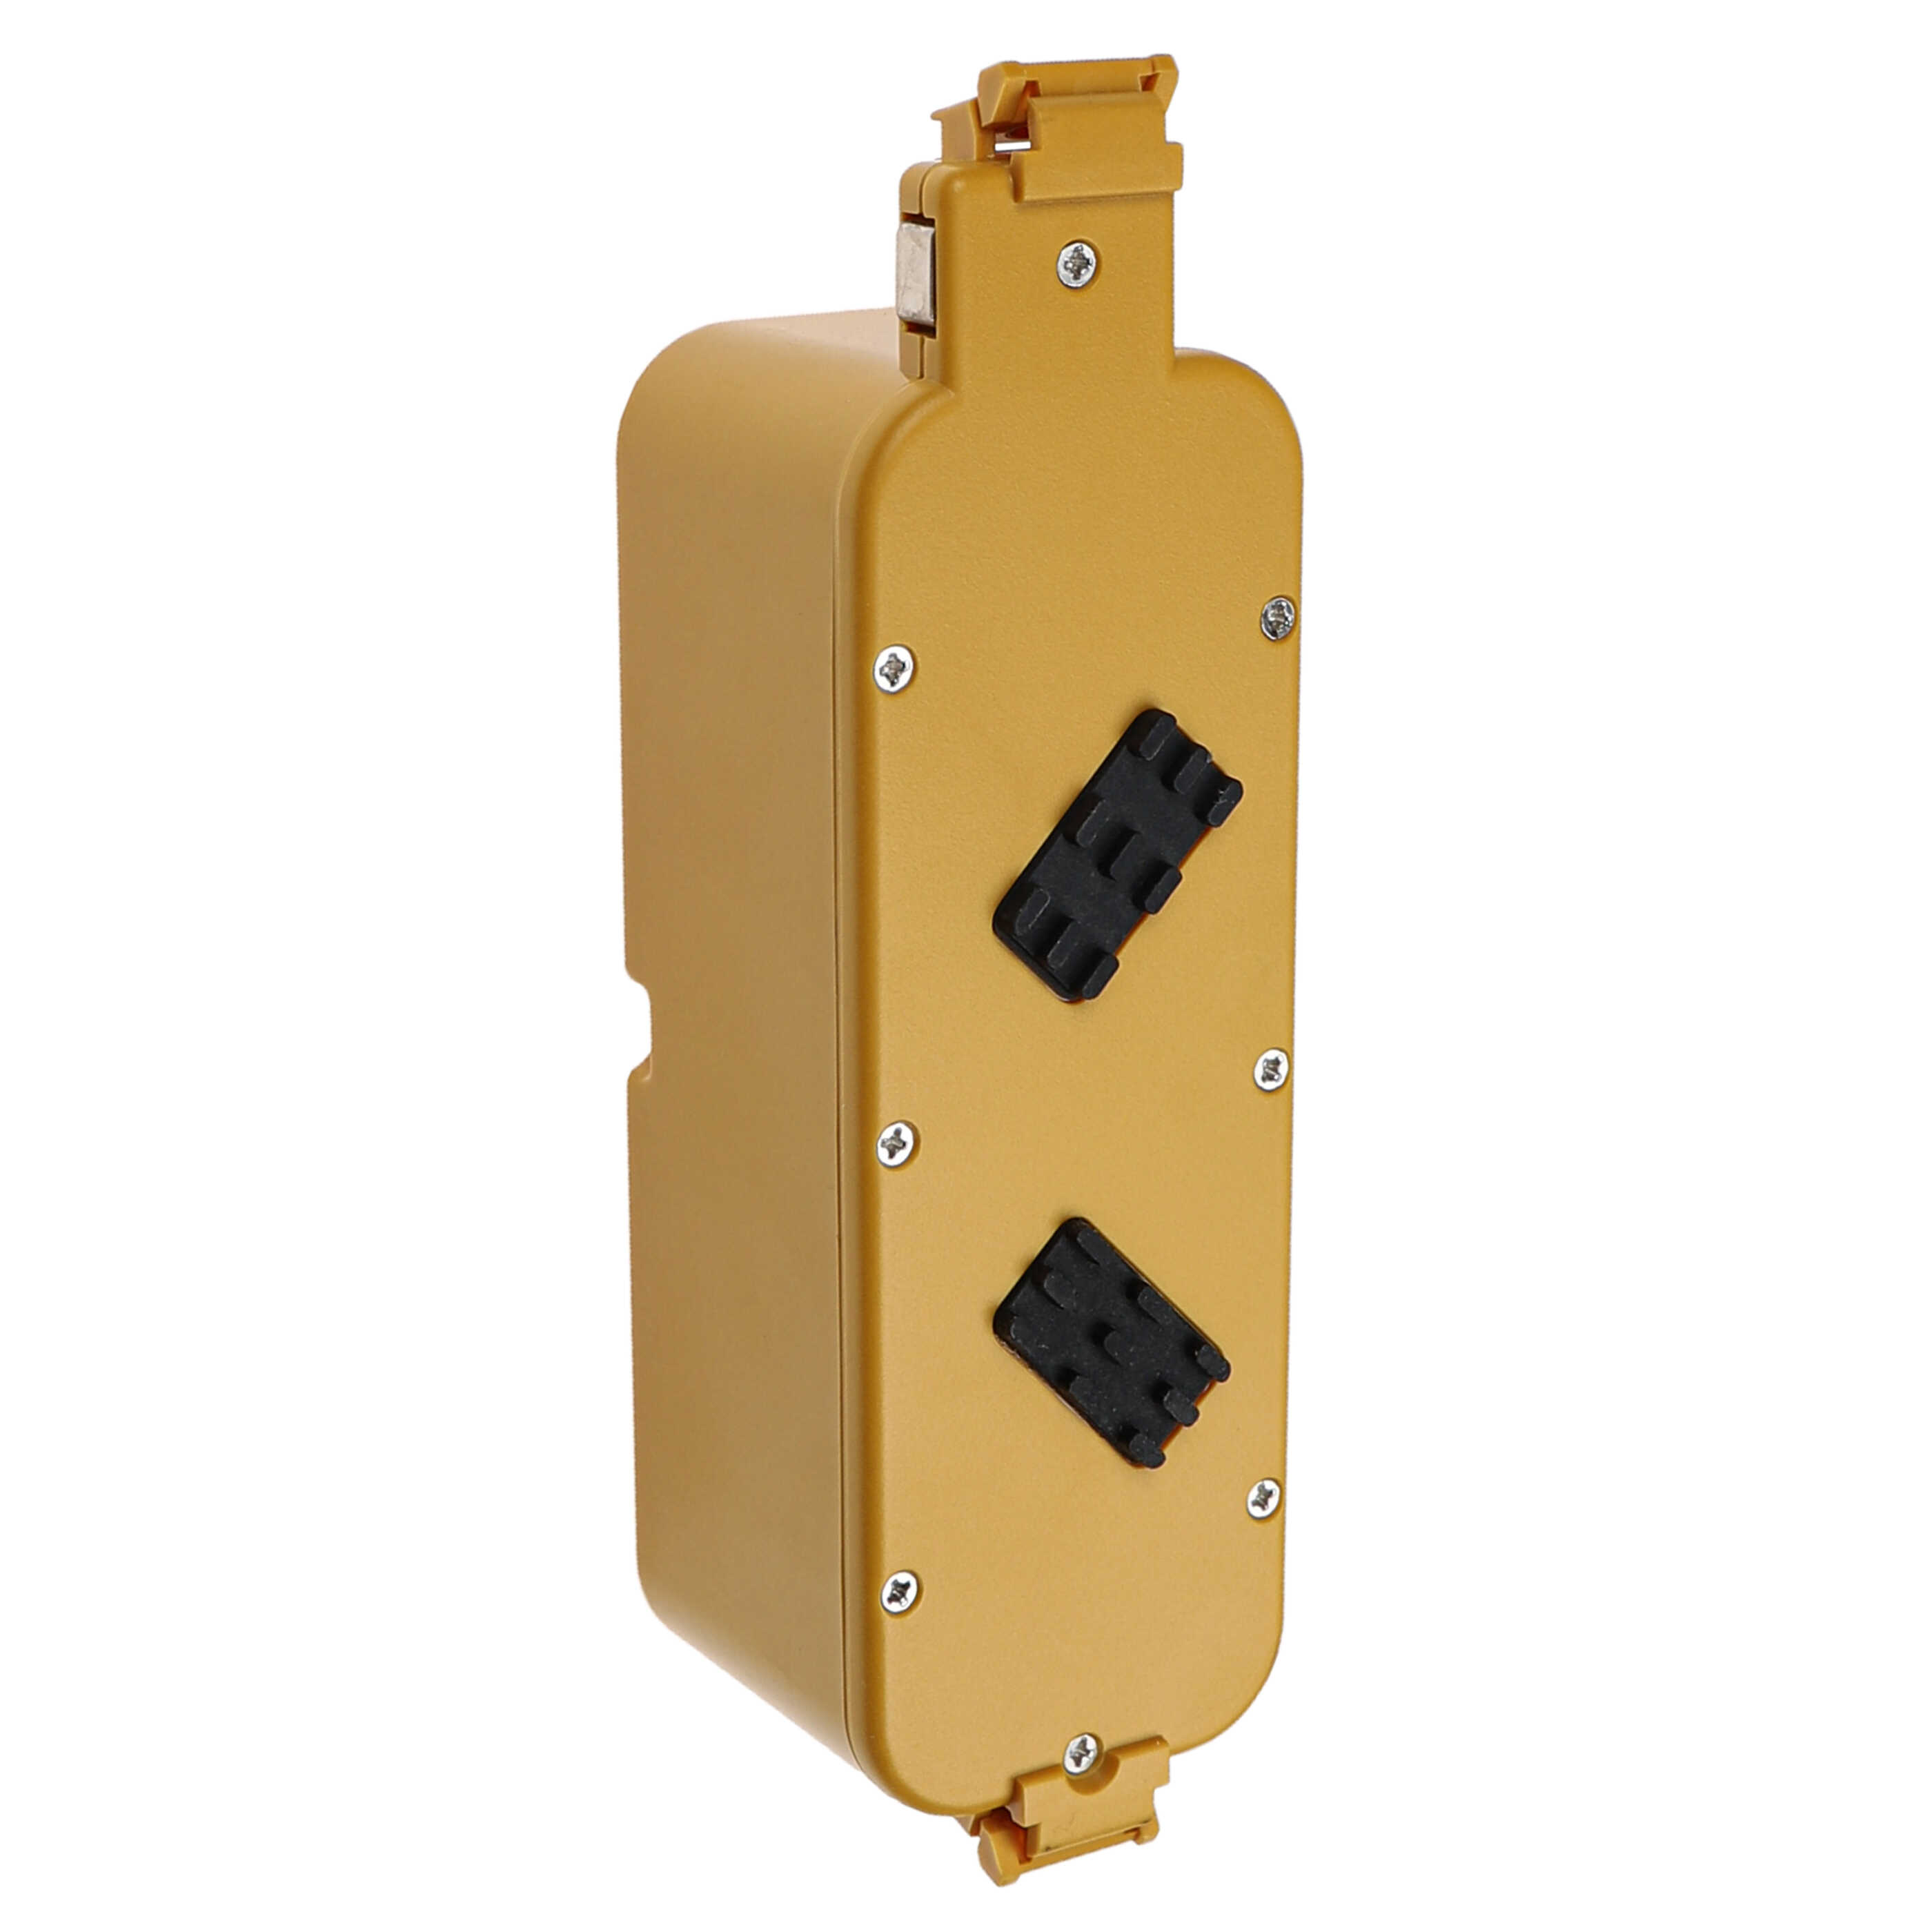 Batería reemplaza APS 4905, NC-3493-919, 11700, 17373 para aspiradora iRobot - 4500 mAh 14,4 V NiMH amarillo